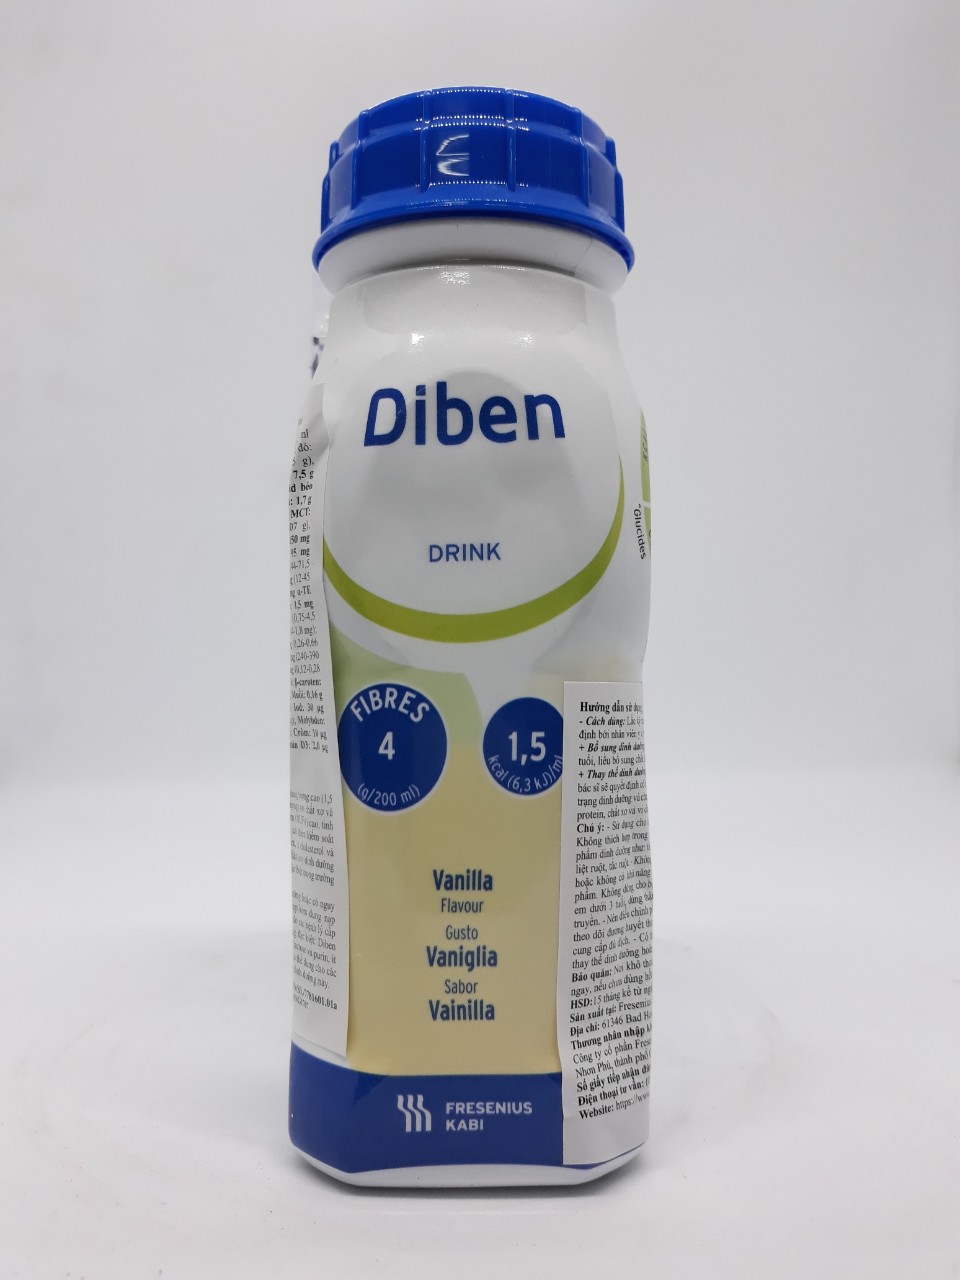 Sữa Diben Drink Vanilla 200ml cho Bệnh Nhân Tiểu Đường ( 1 vỉ 4 chai)